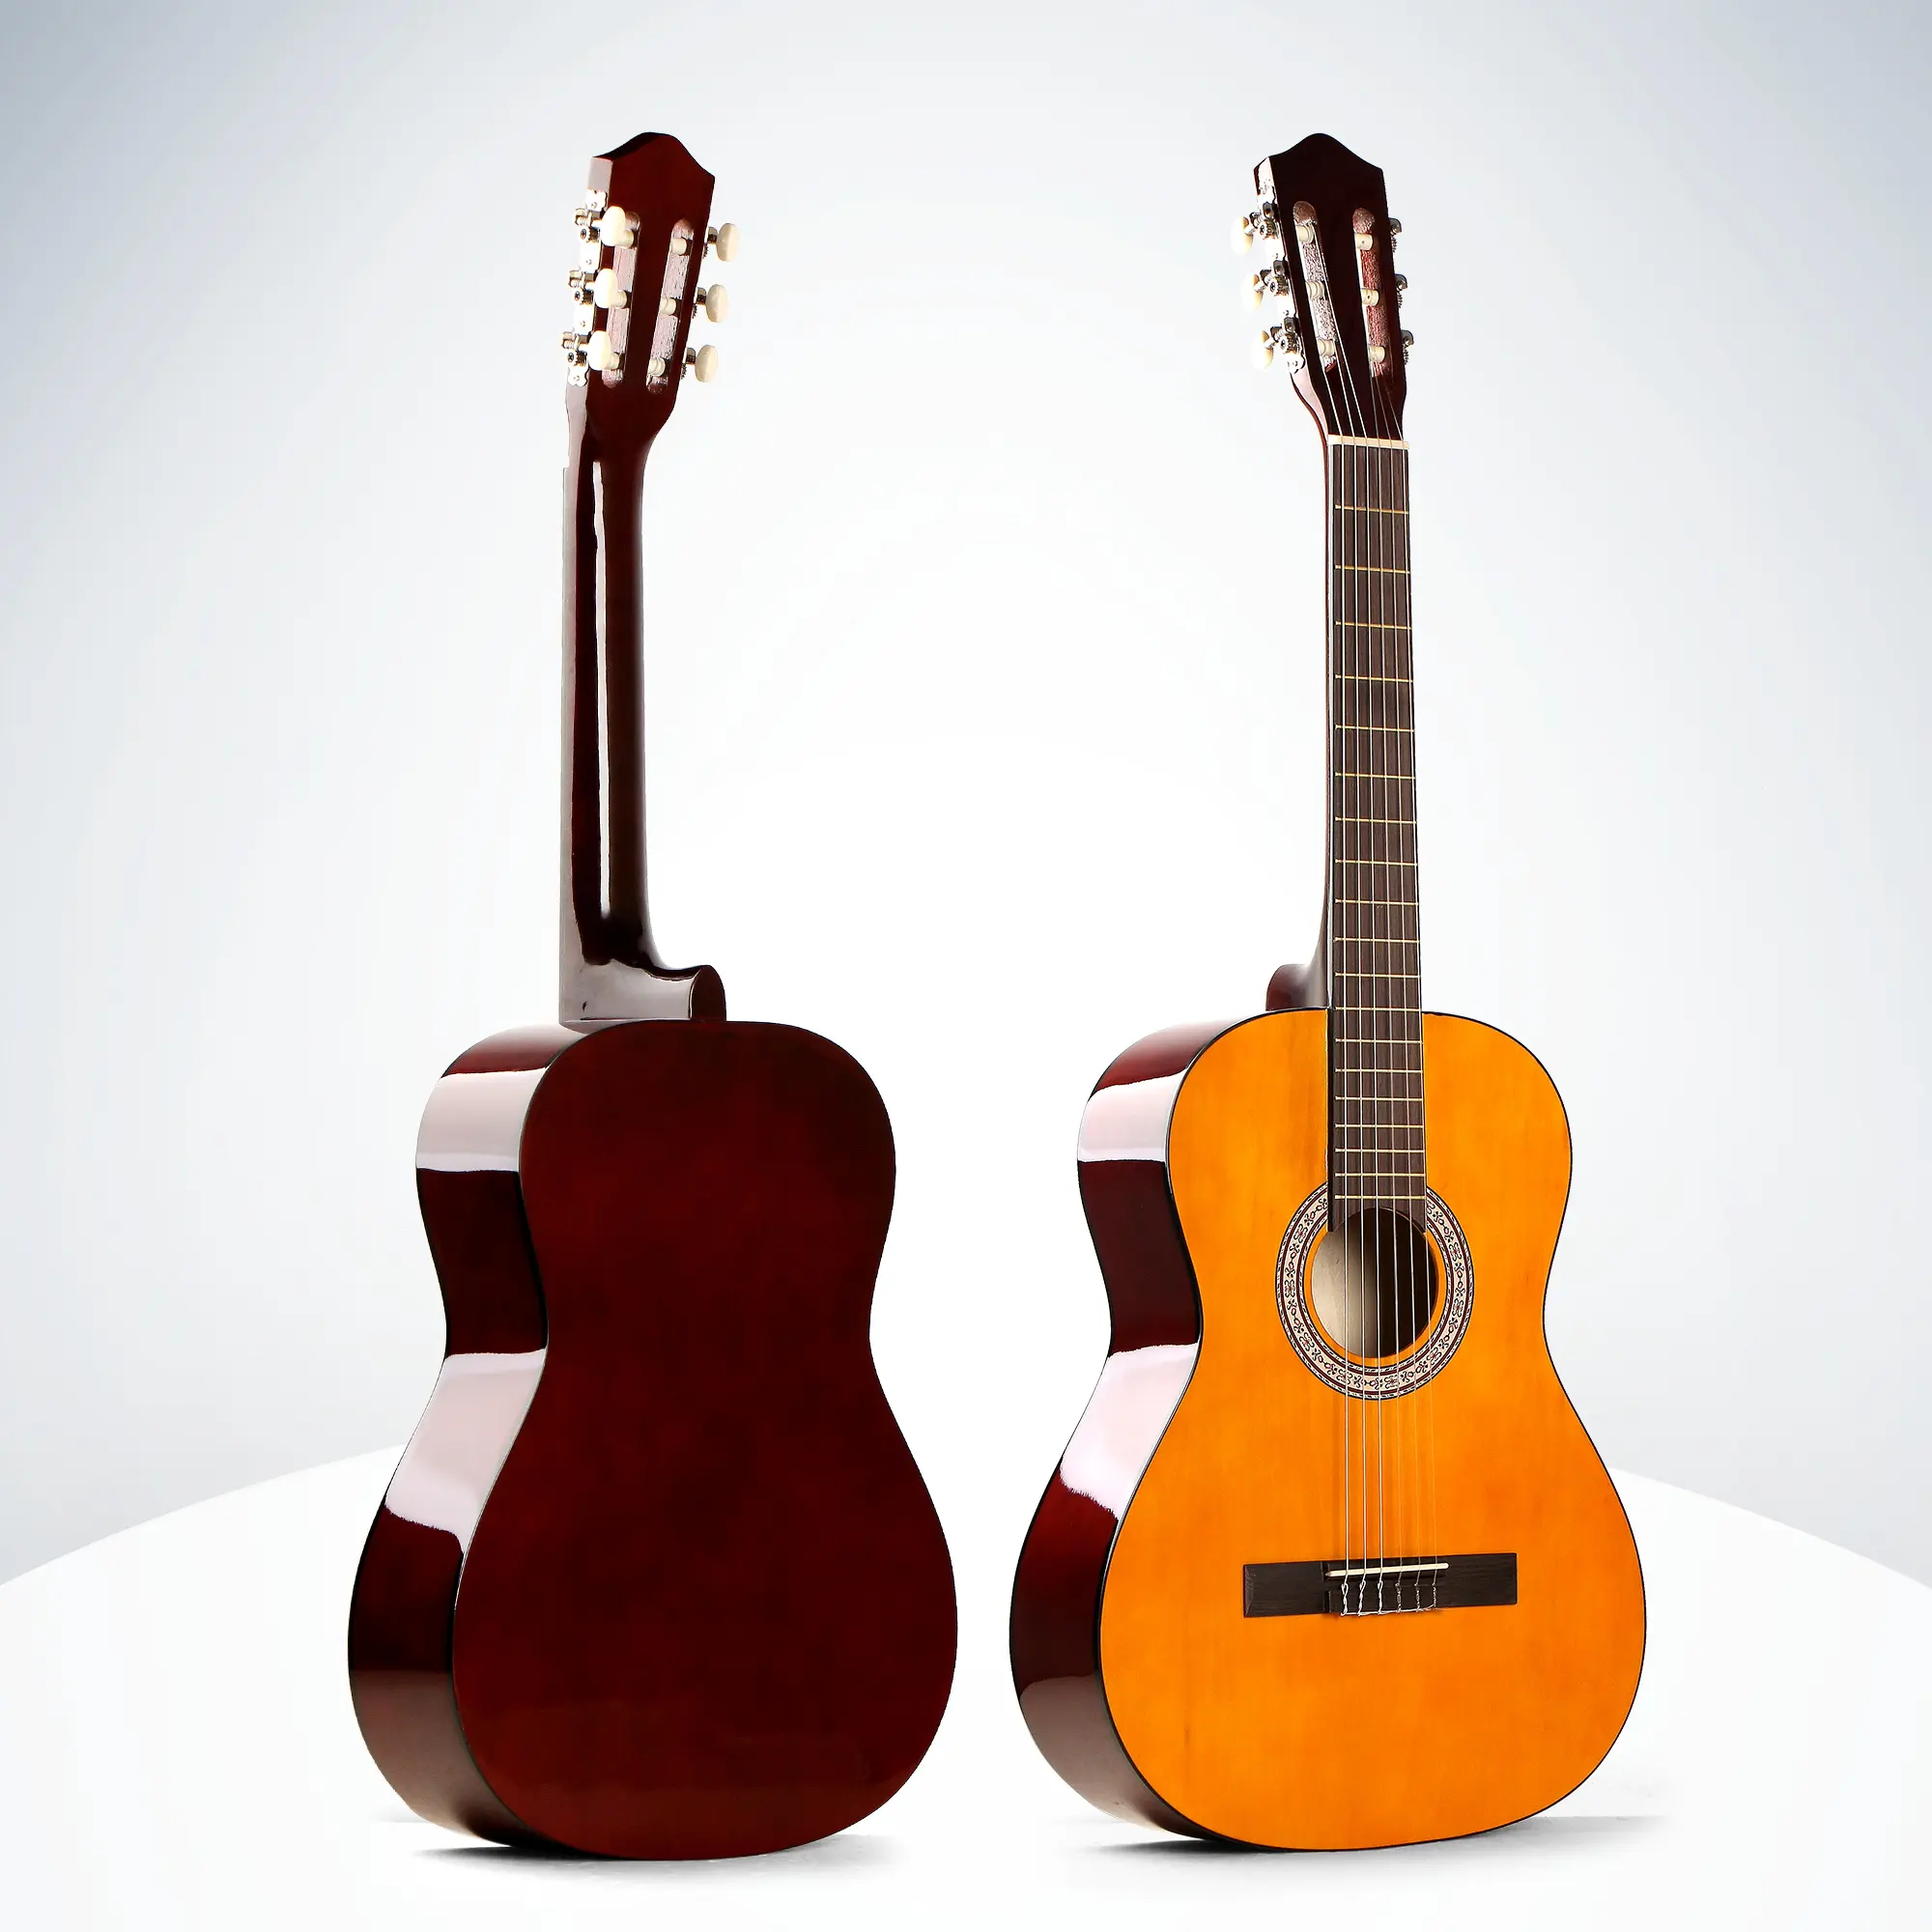 39 Inch Cổ Điển Guitar Spruce Guitar Bán Buôn Giá Rẻ Nhất Với Trussrod Tay Sản Xuất Tại Trung Quốc